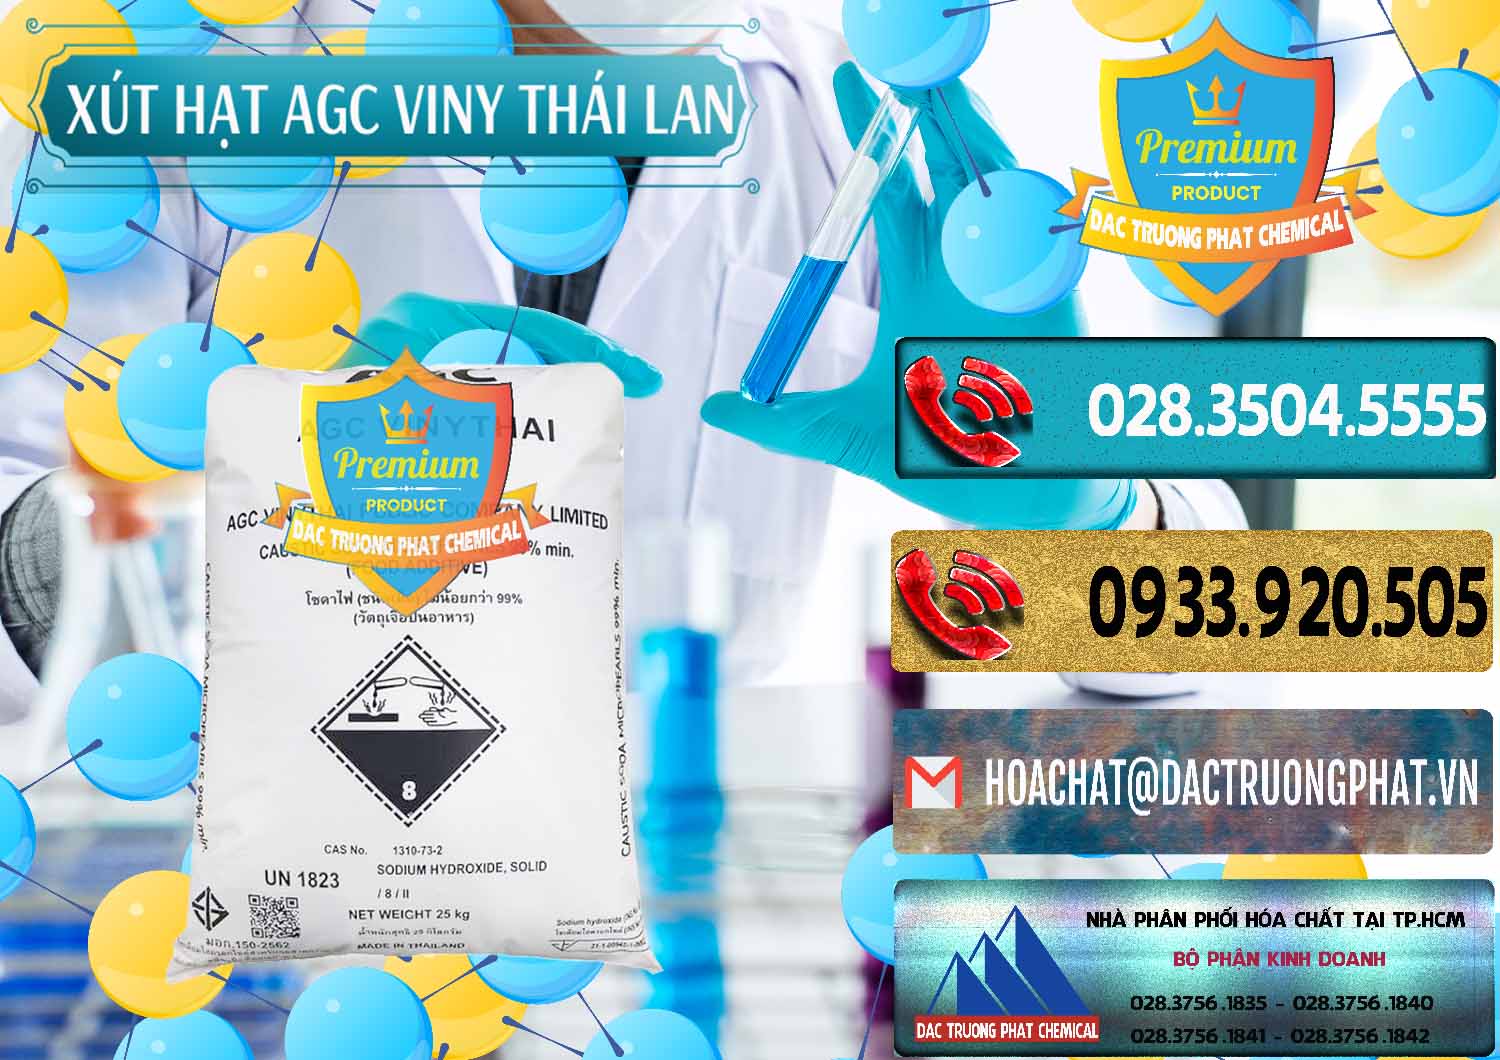 Cty chuyên bán ( cung cấp ) Xút Hạt - NaOH Bột 99% AGC Viny Thái Lan - 0399 - Cty cung cấp ( phân phối ) hóa chất tại TP.HCM - hoachatdetnhuom.com